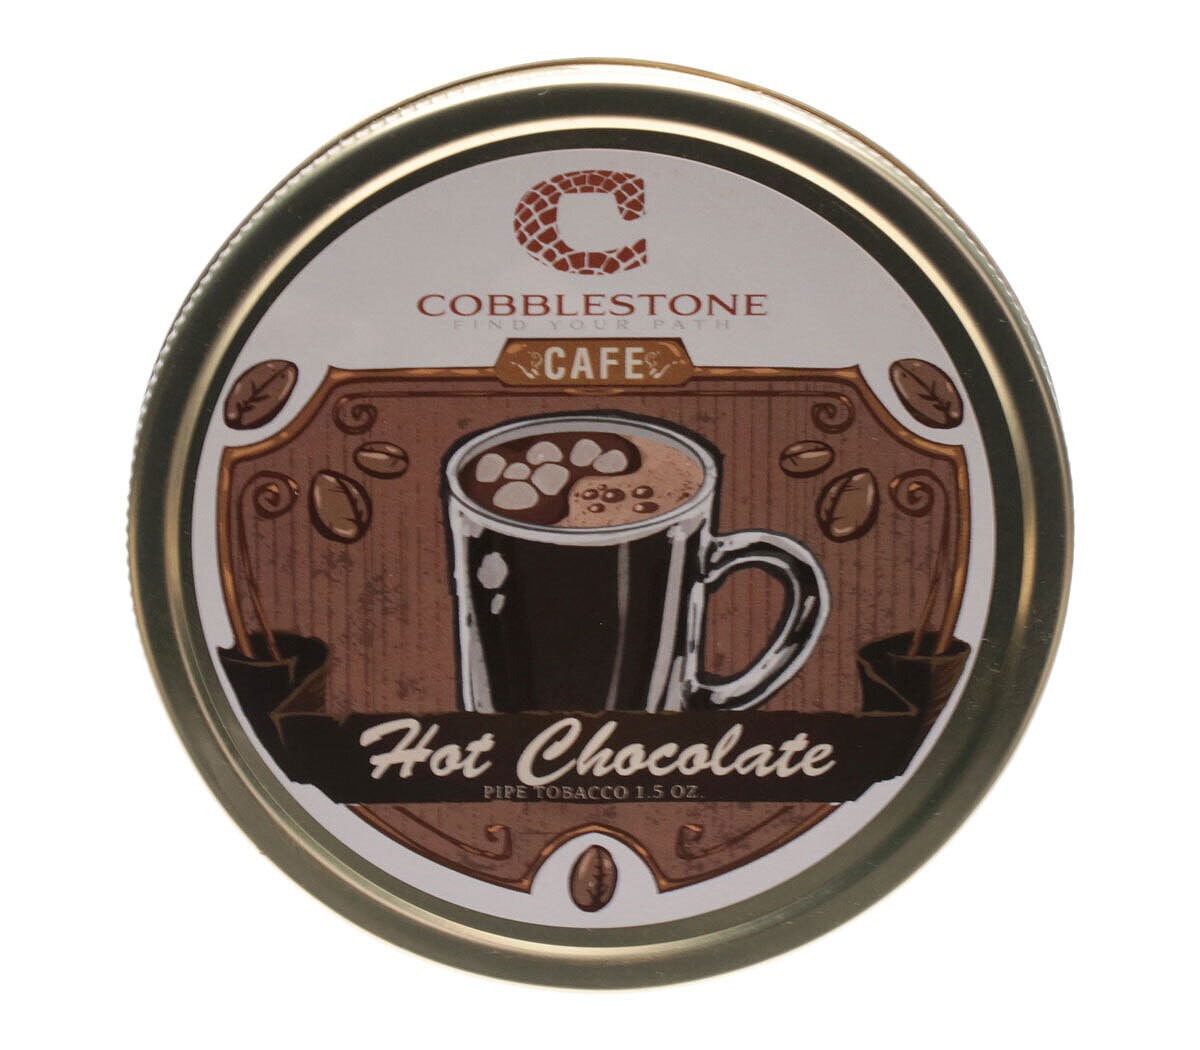 Cobblestone Hot Chocolate Pipe Tobacco 1.5oz Tin